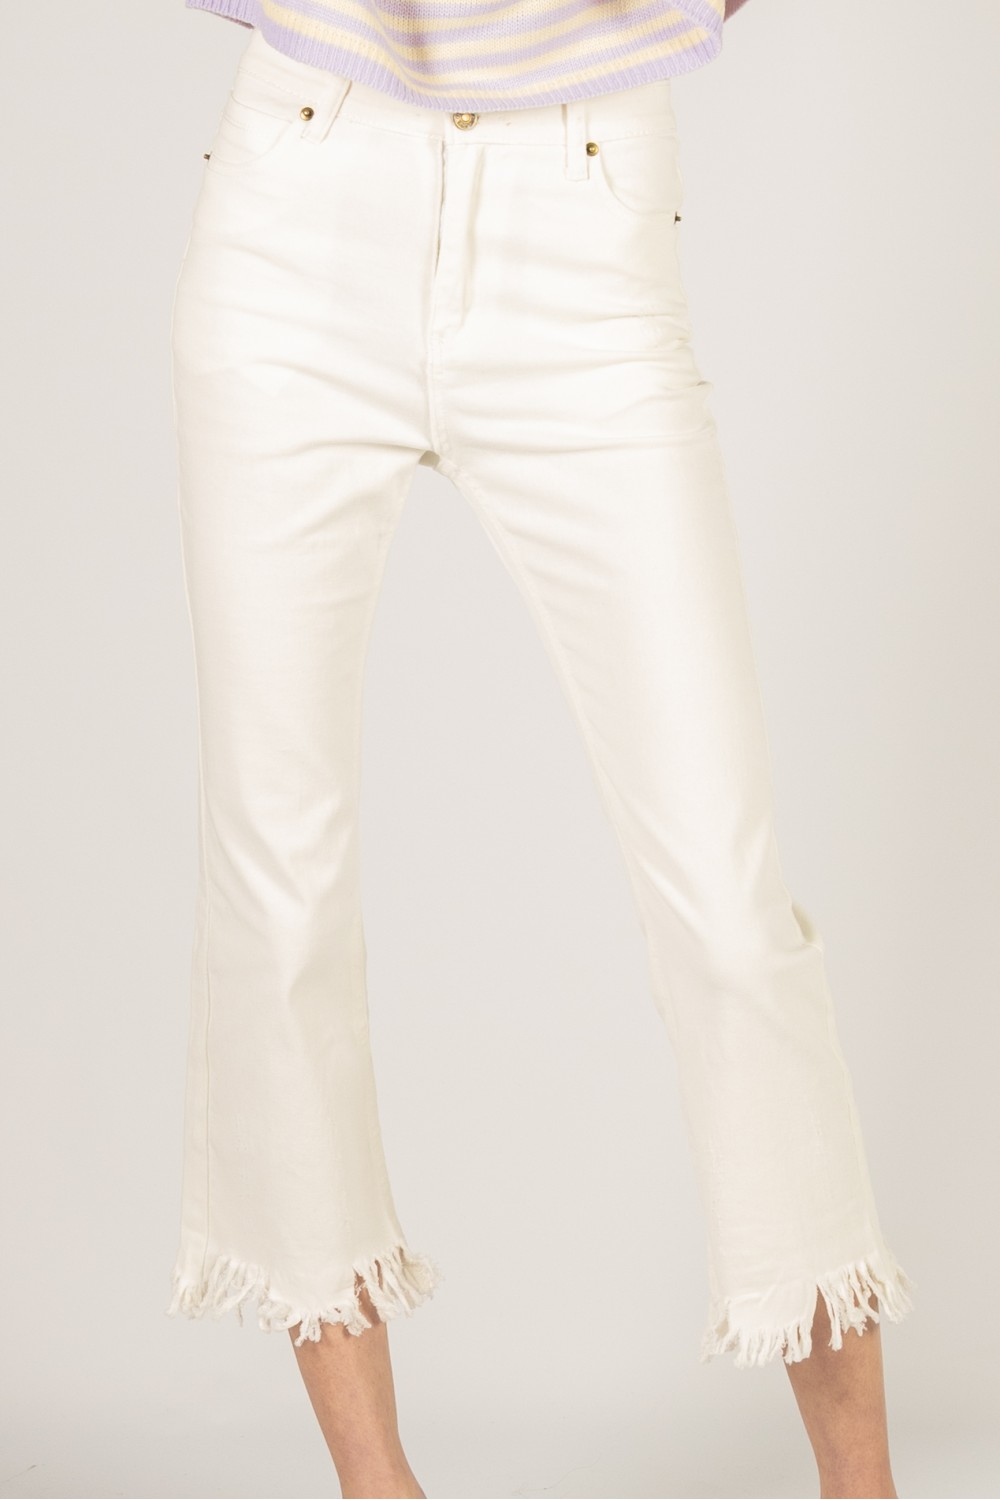 White Fringe Straight Leg Capris: Women's White Cotton Capri